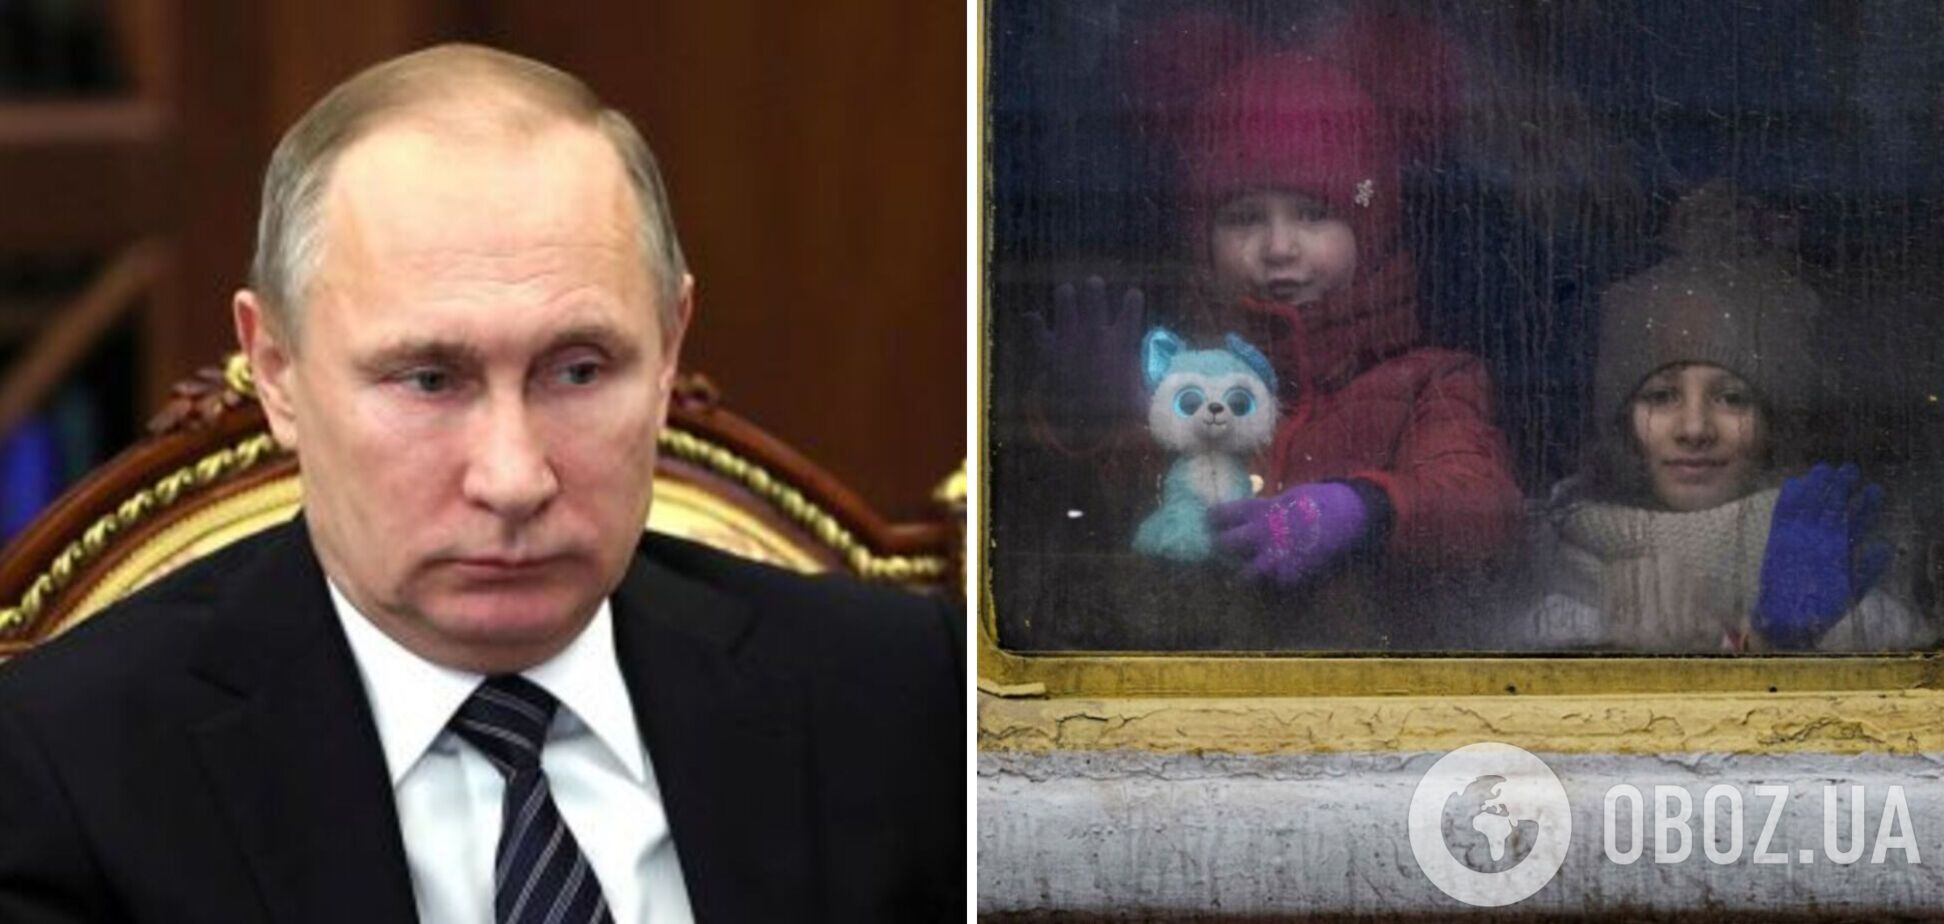 Прокурор МУС Хан объяснил, почему ордер об аресте Путина был издан по делу о похищении украинских детей